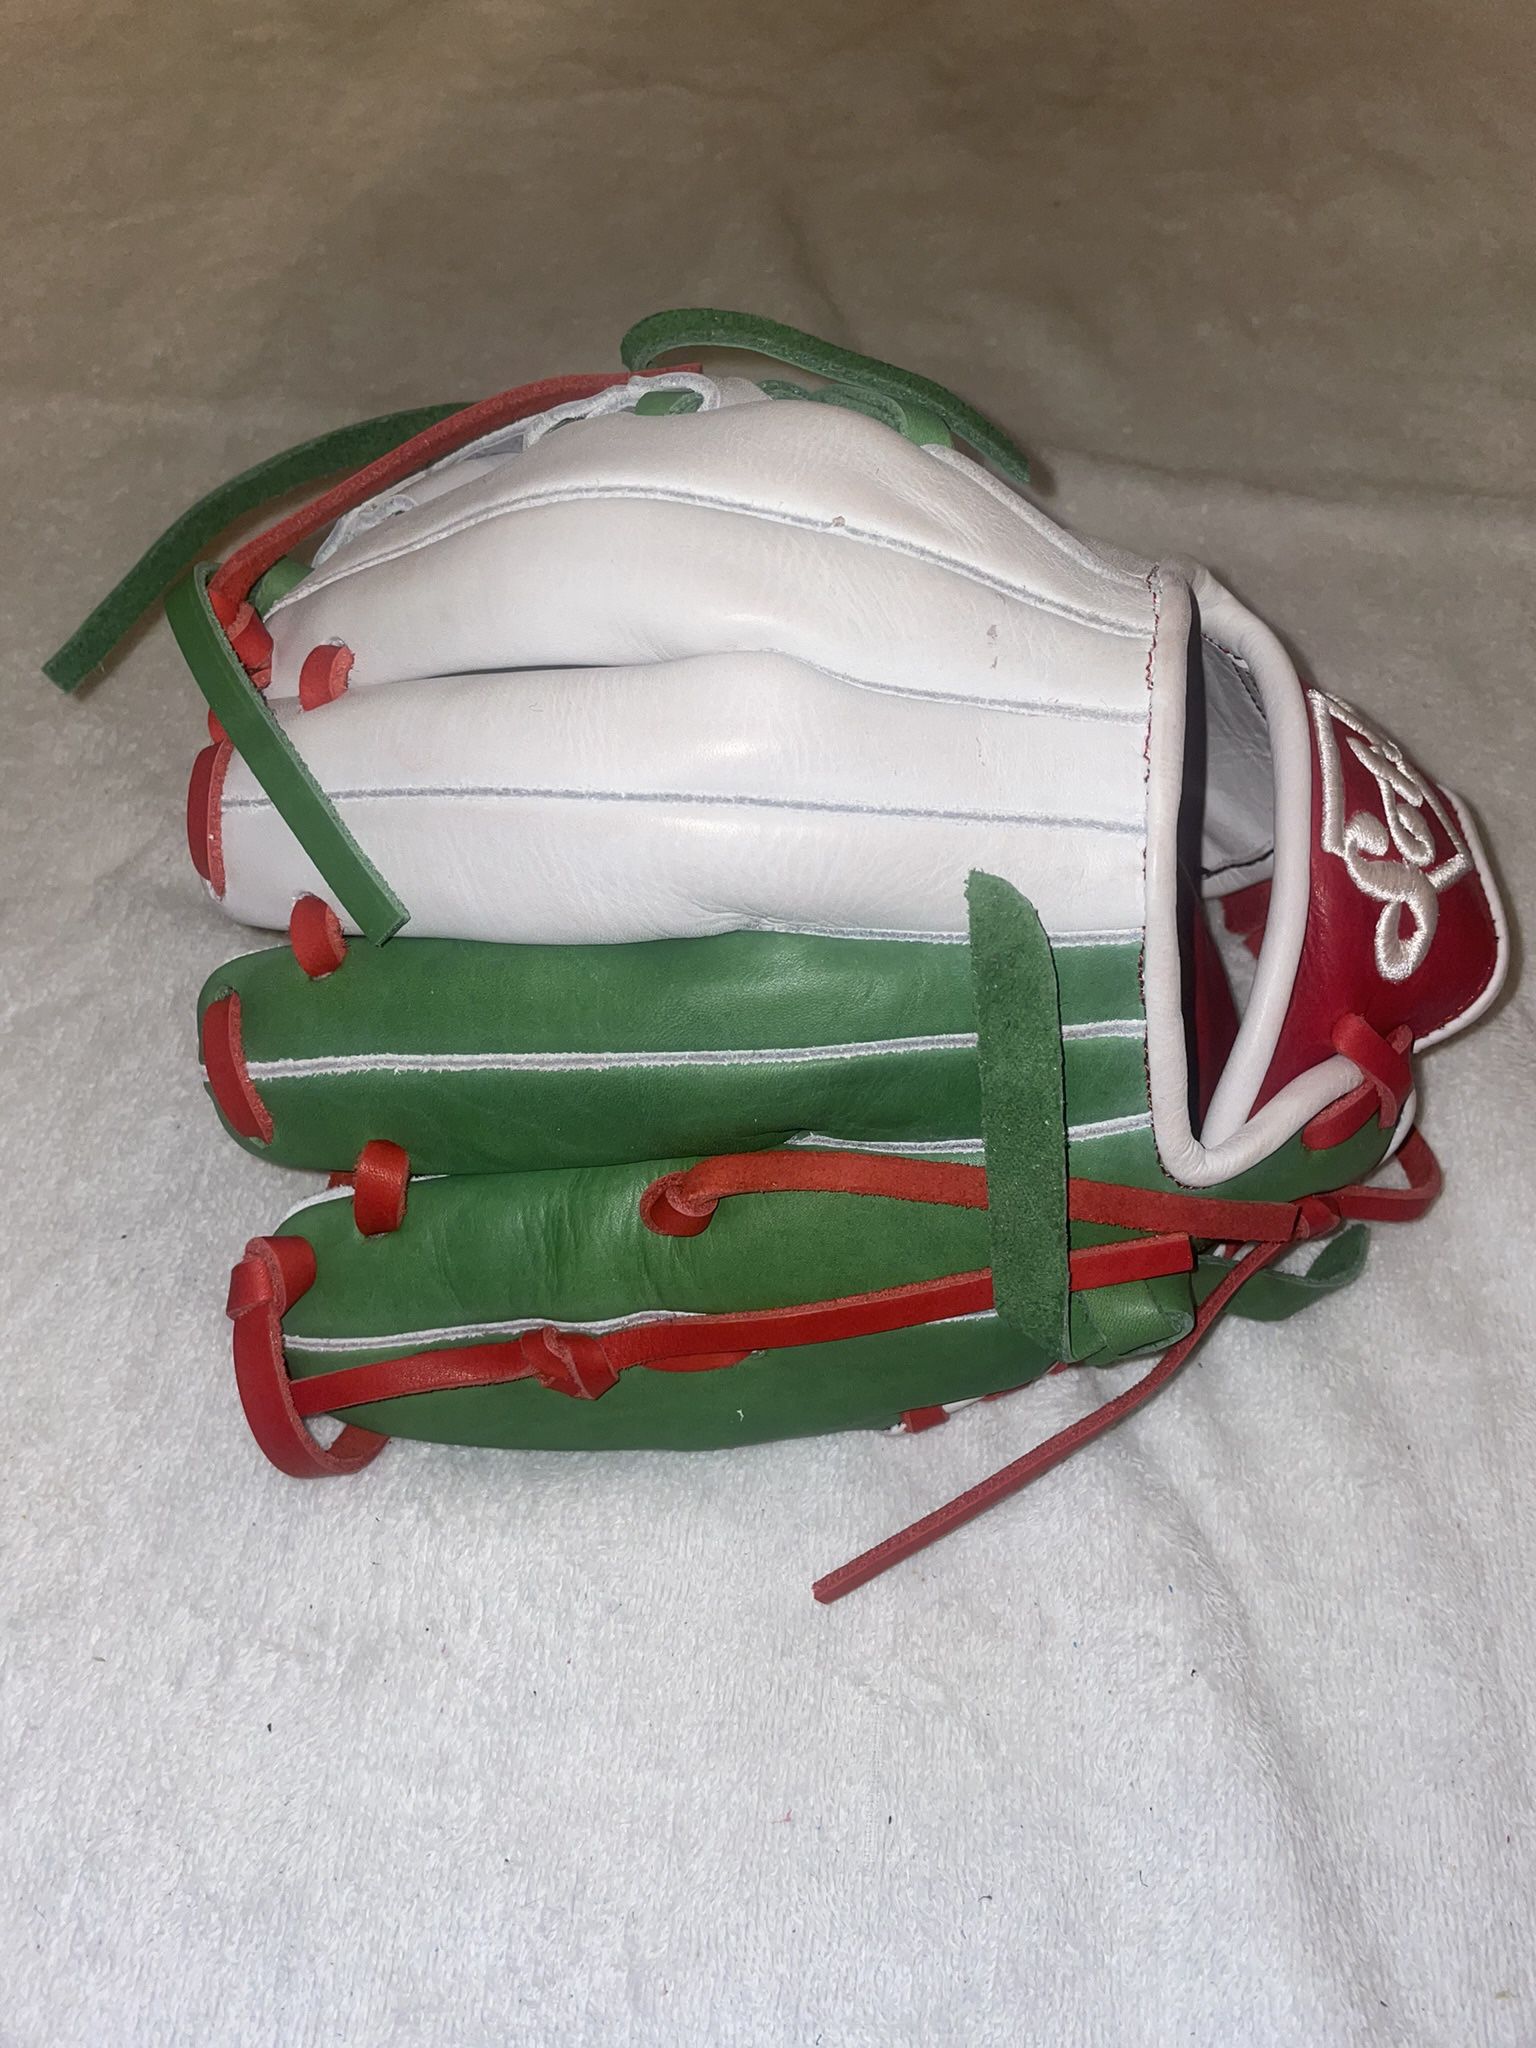 Mexico Edition Baseball Glove